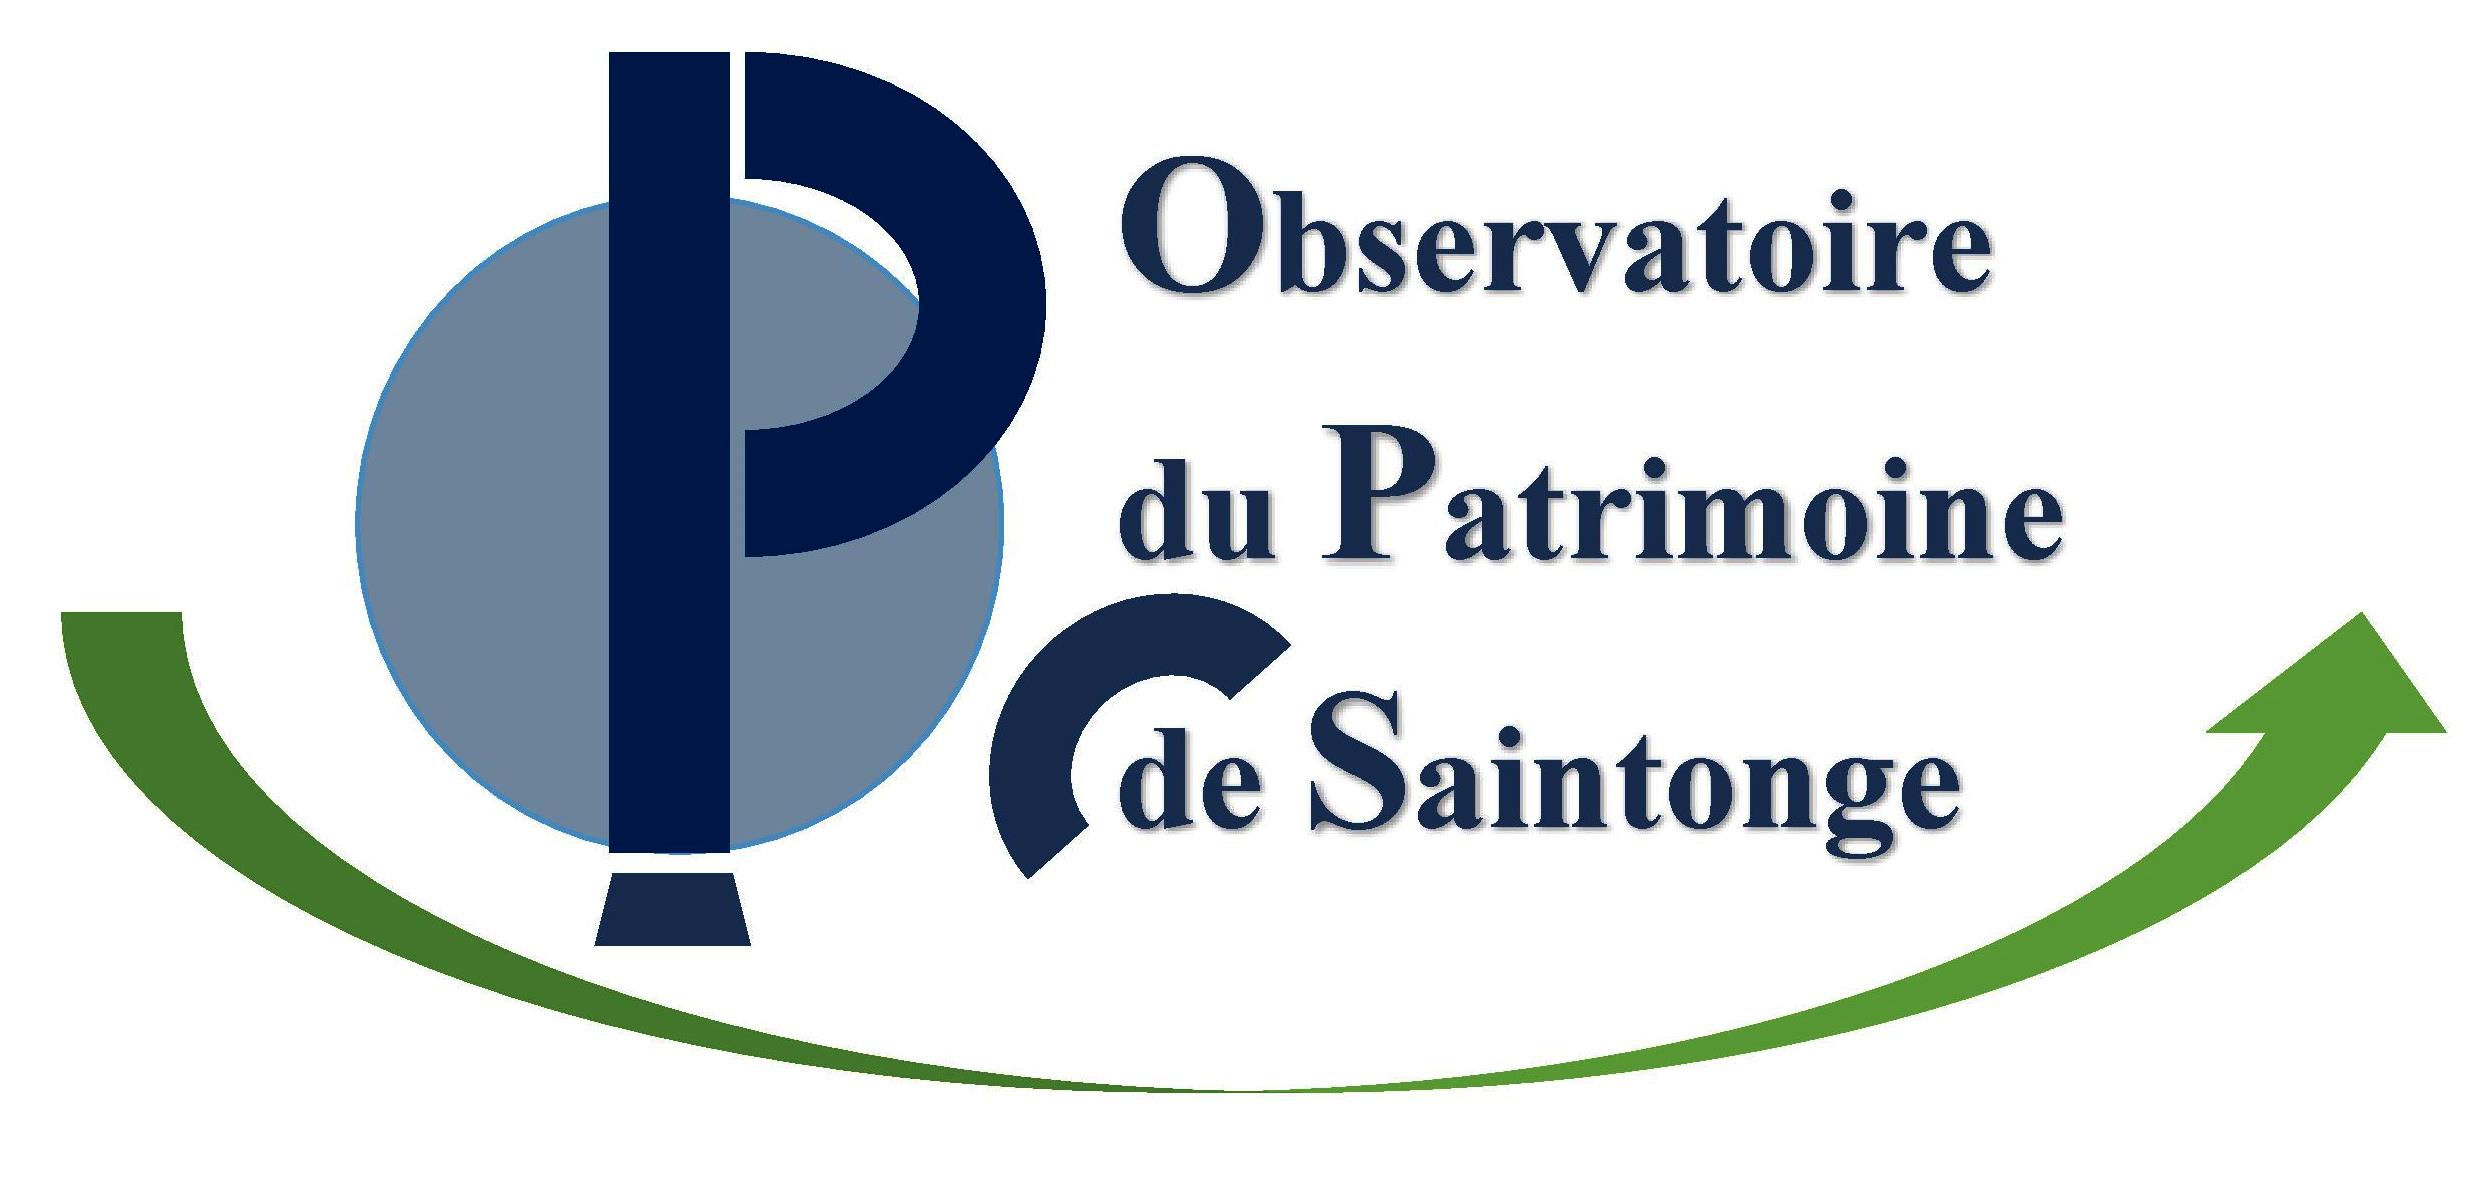 Observatoire du Patrimoine de Saintonge